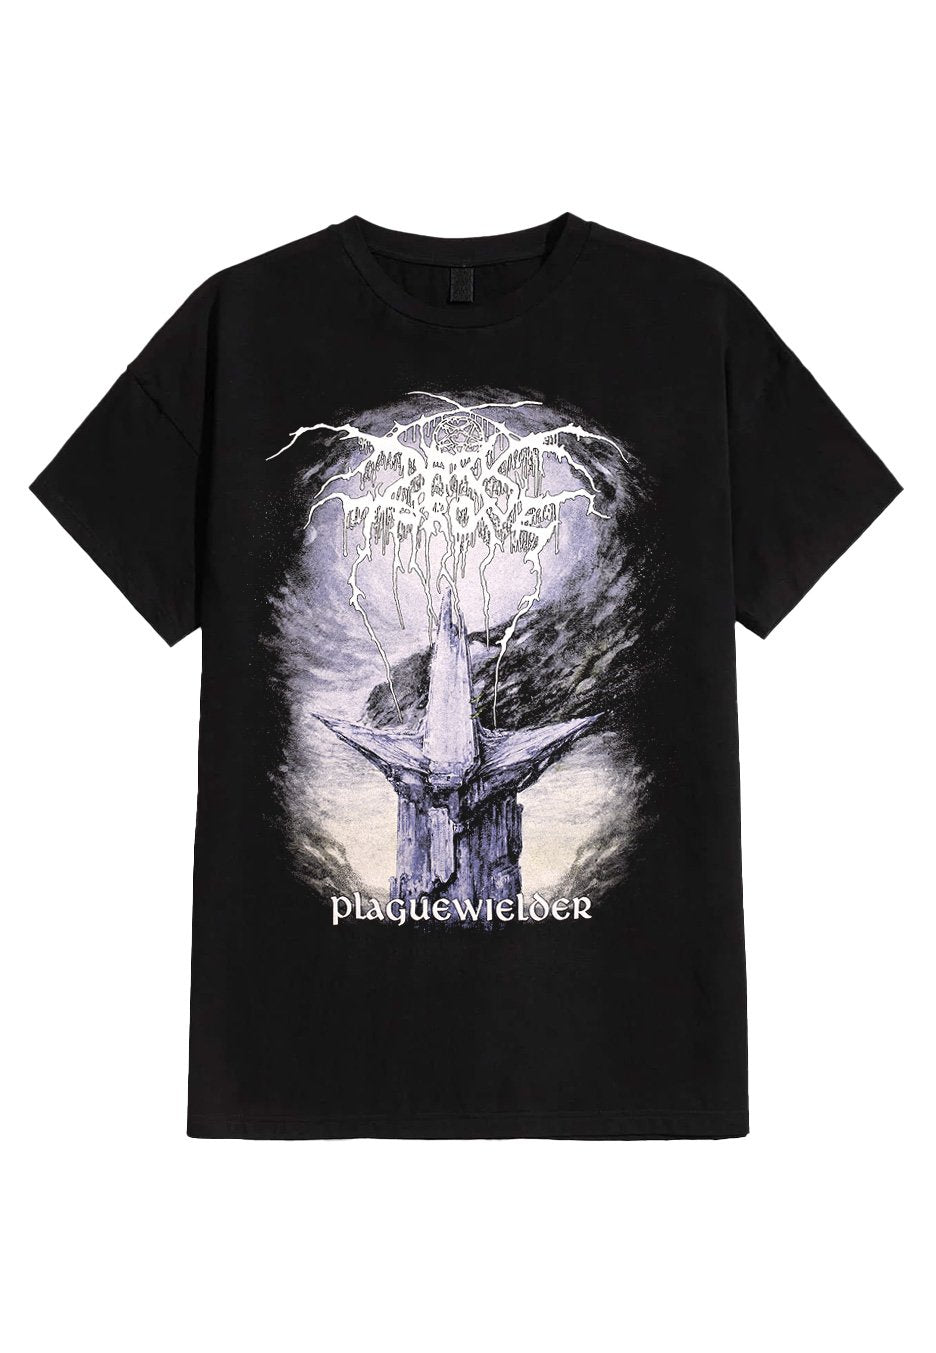 Darkthrone - Plaguewielder - T-Shirt